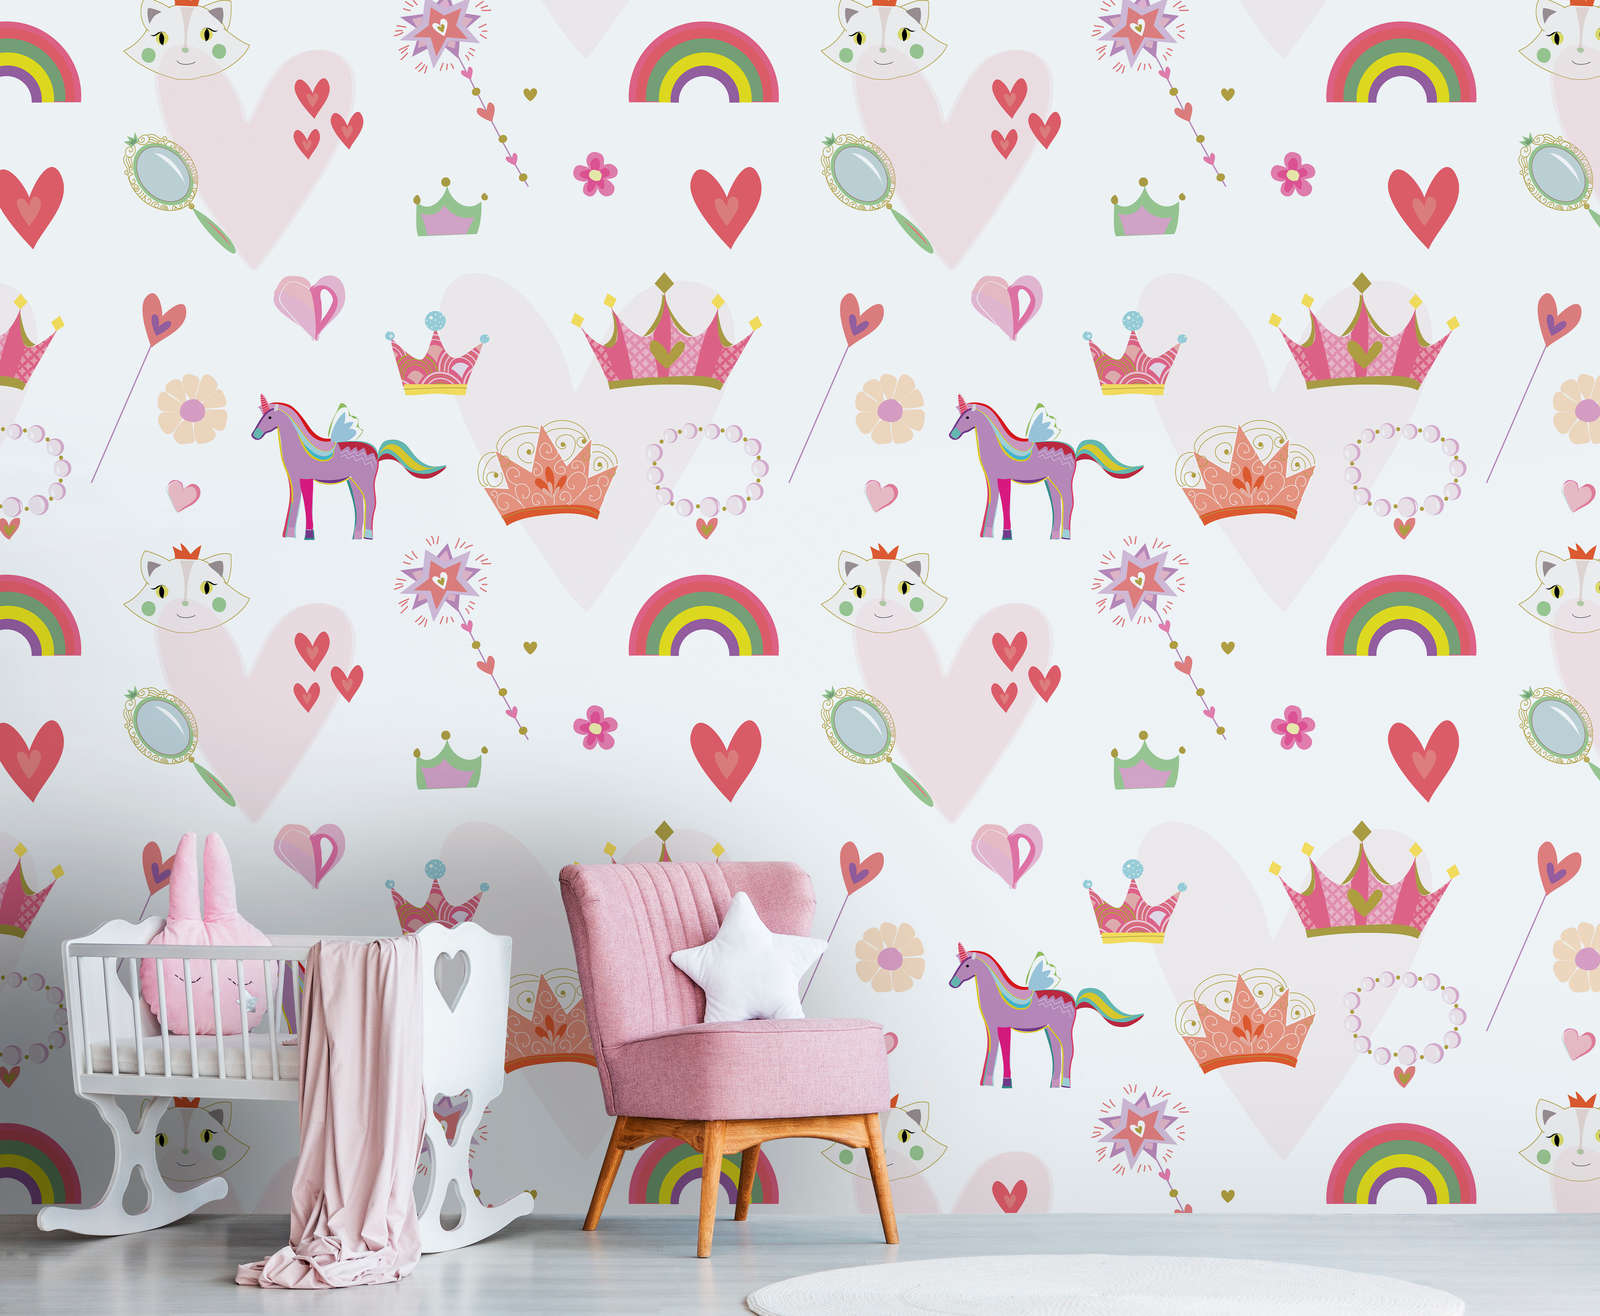             Papier peint enfant style princesse avec cœurs et animaux - multicolore, rose, blanc
        